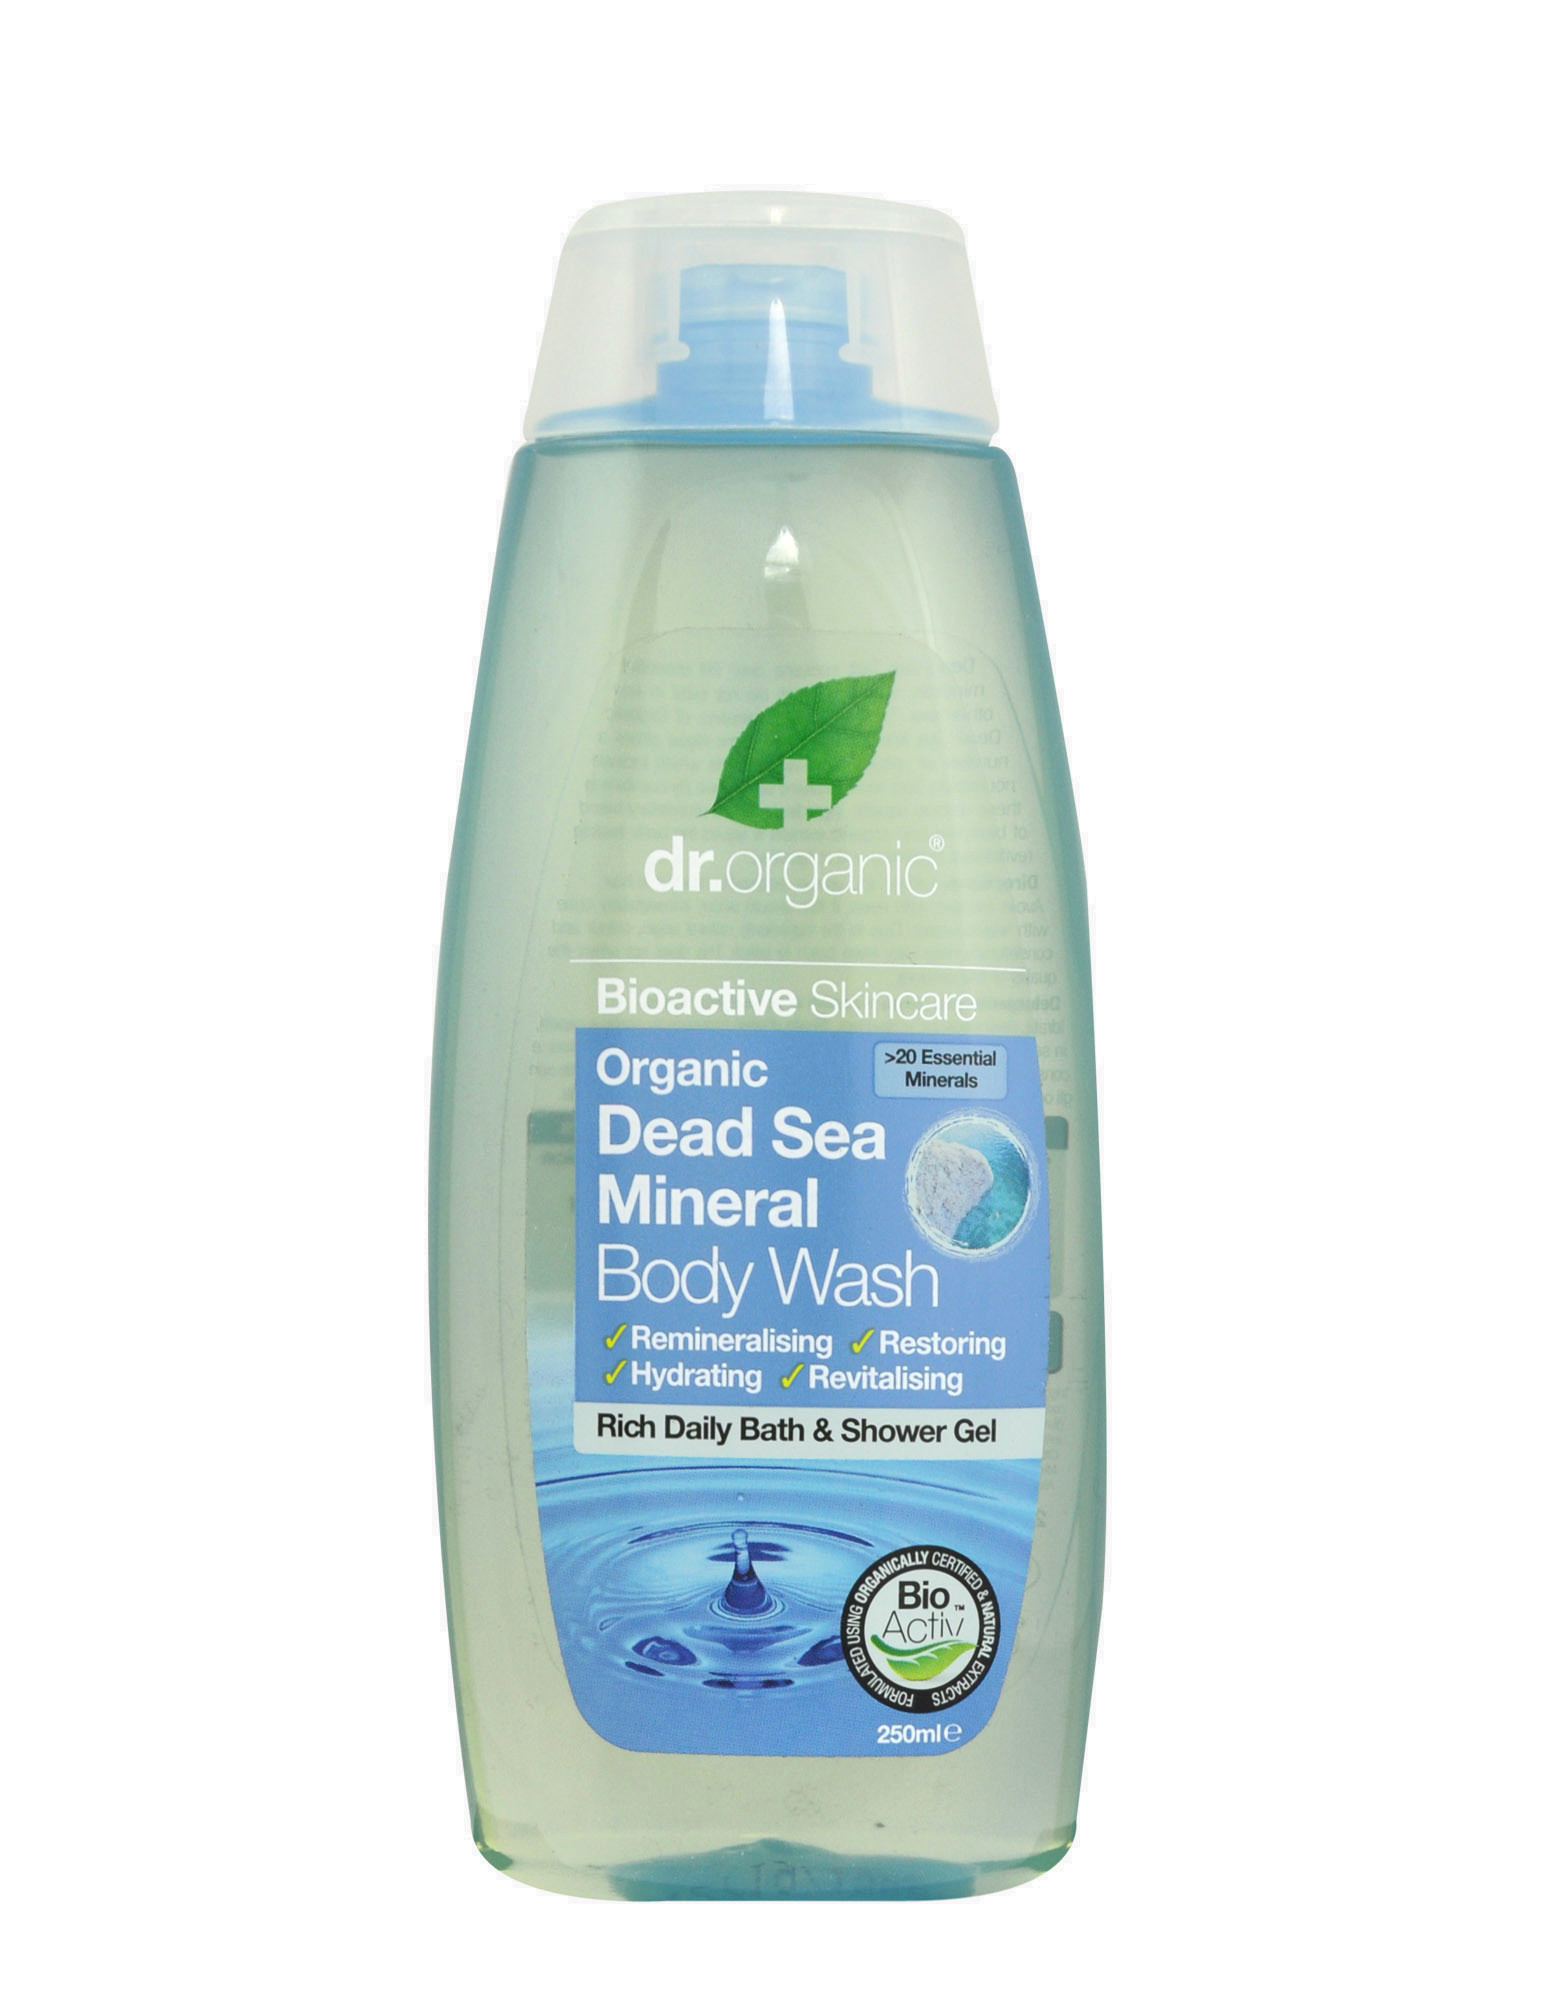 Organic Dead Sea Mineral Body Wash by DR. ORGANIC (250ml